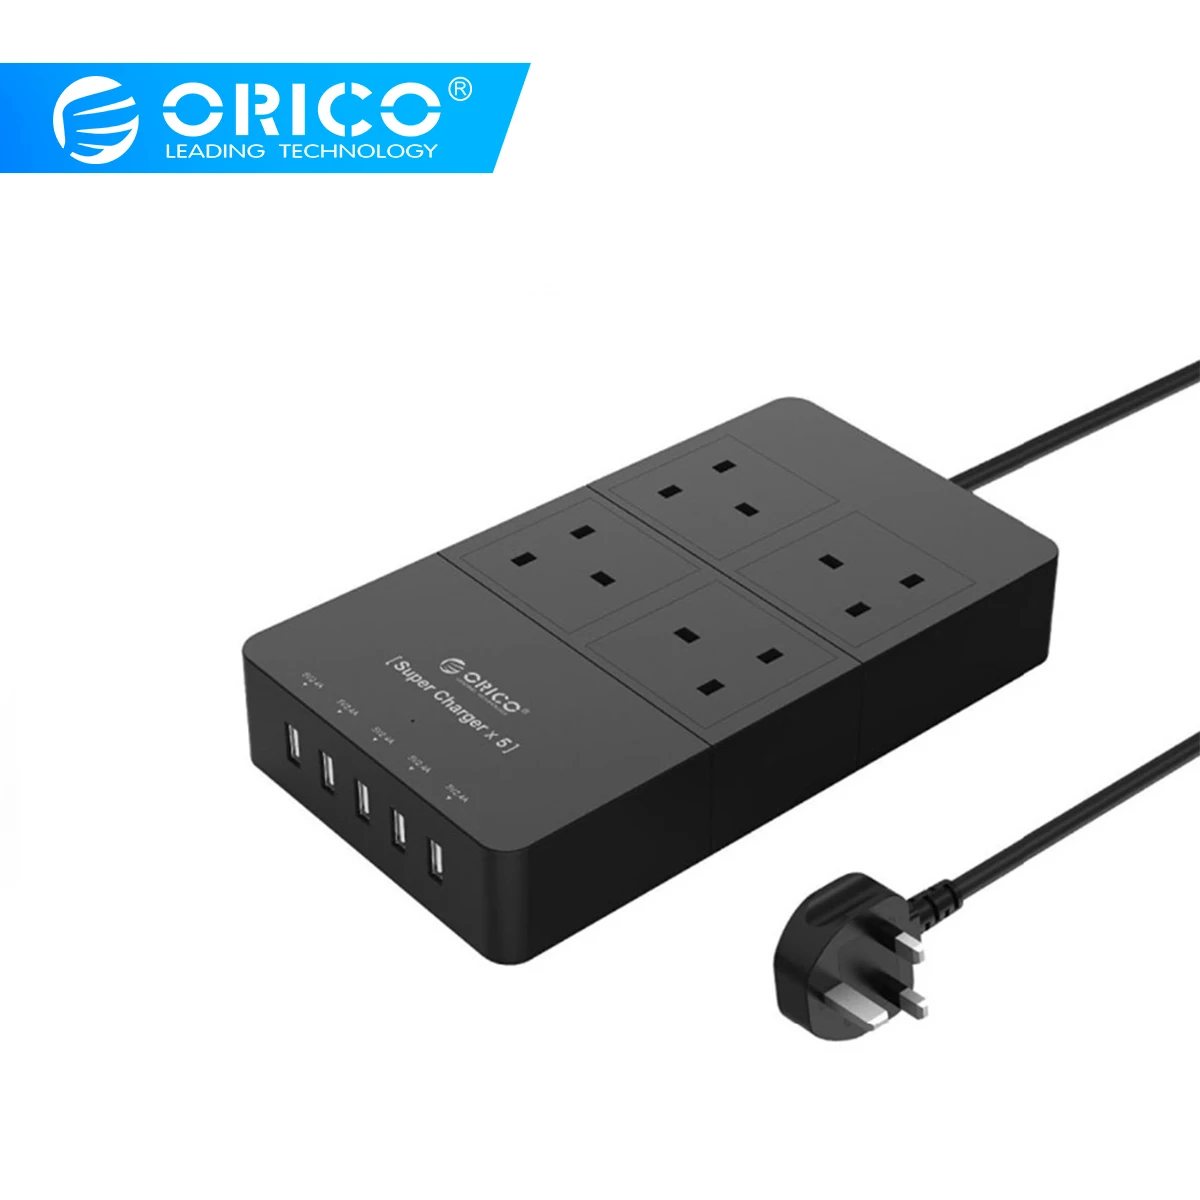 ORICO топ продаж черный блок питания 4 гнезда-5 USB 2.4A Быстрая зарядка поддержка Интеллектуальная Зарядка IC